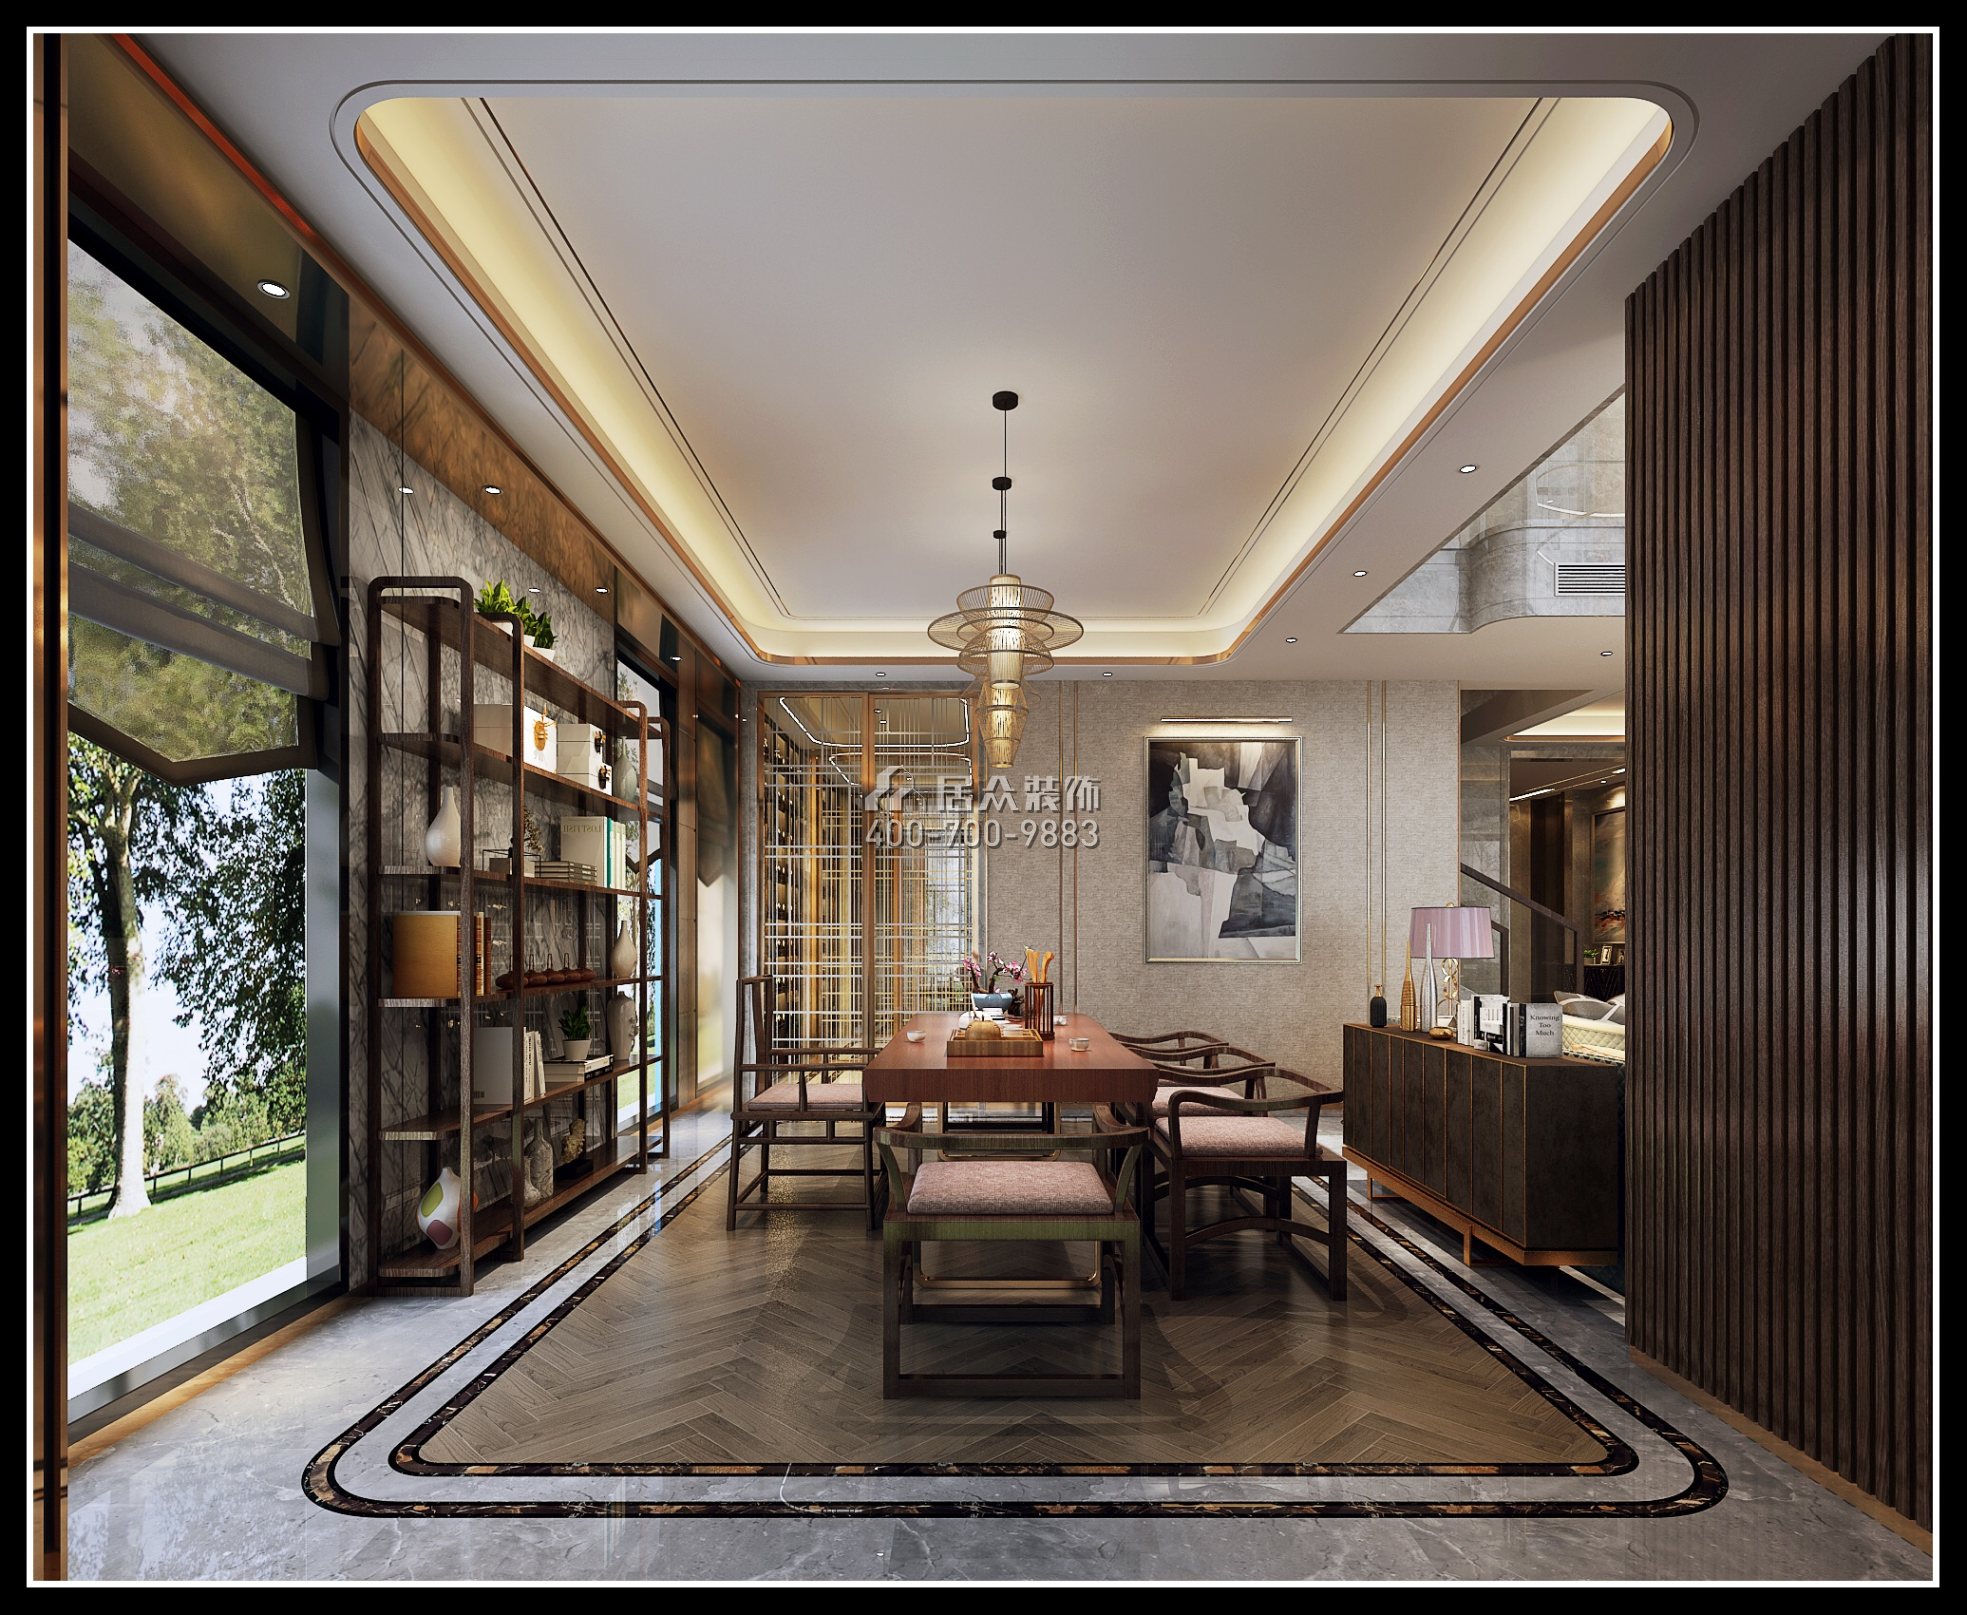 海逸豪庭御峰525平方米现代简约风格别墅户型茶室装修效果图